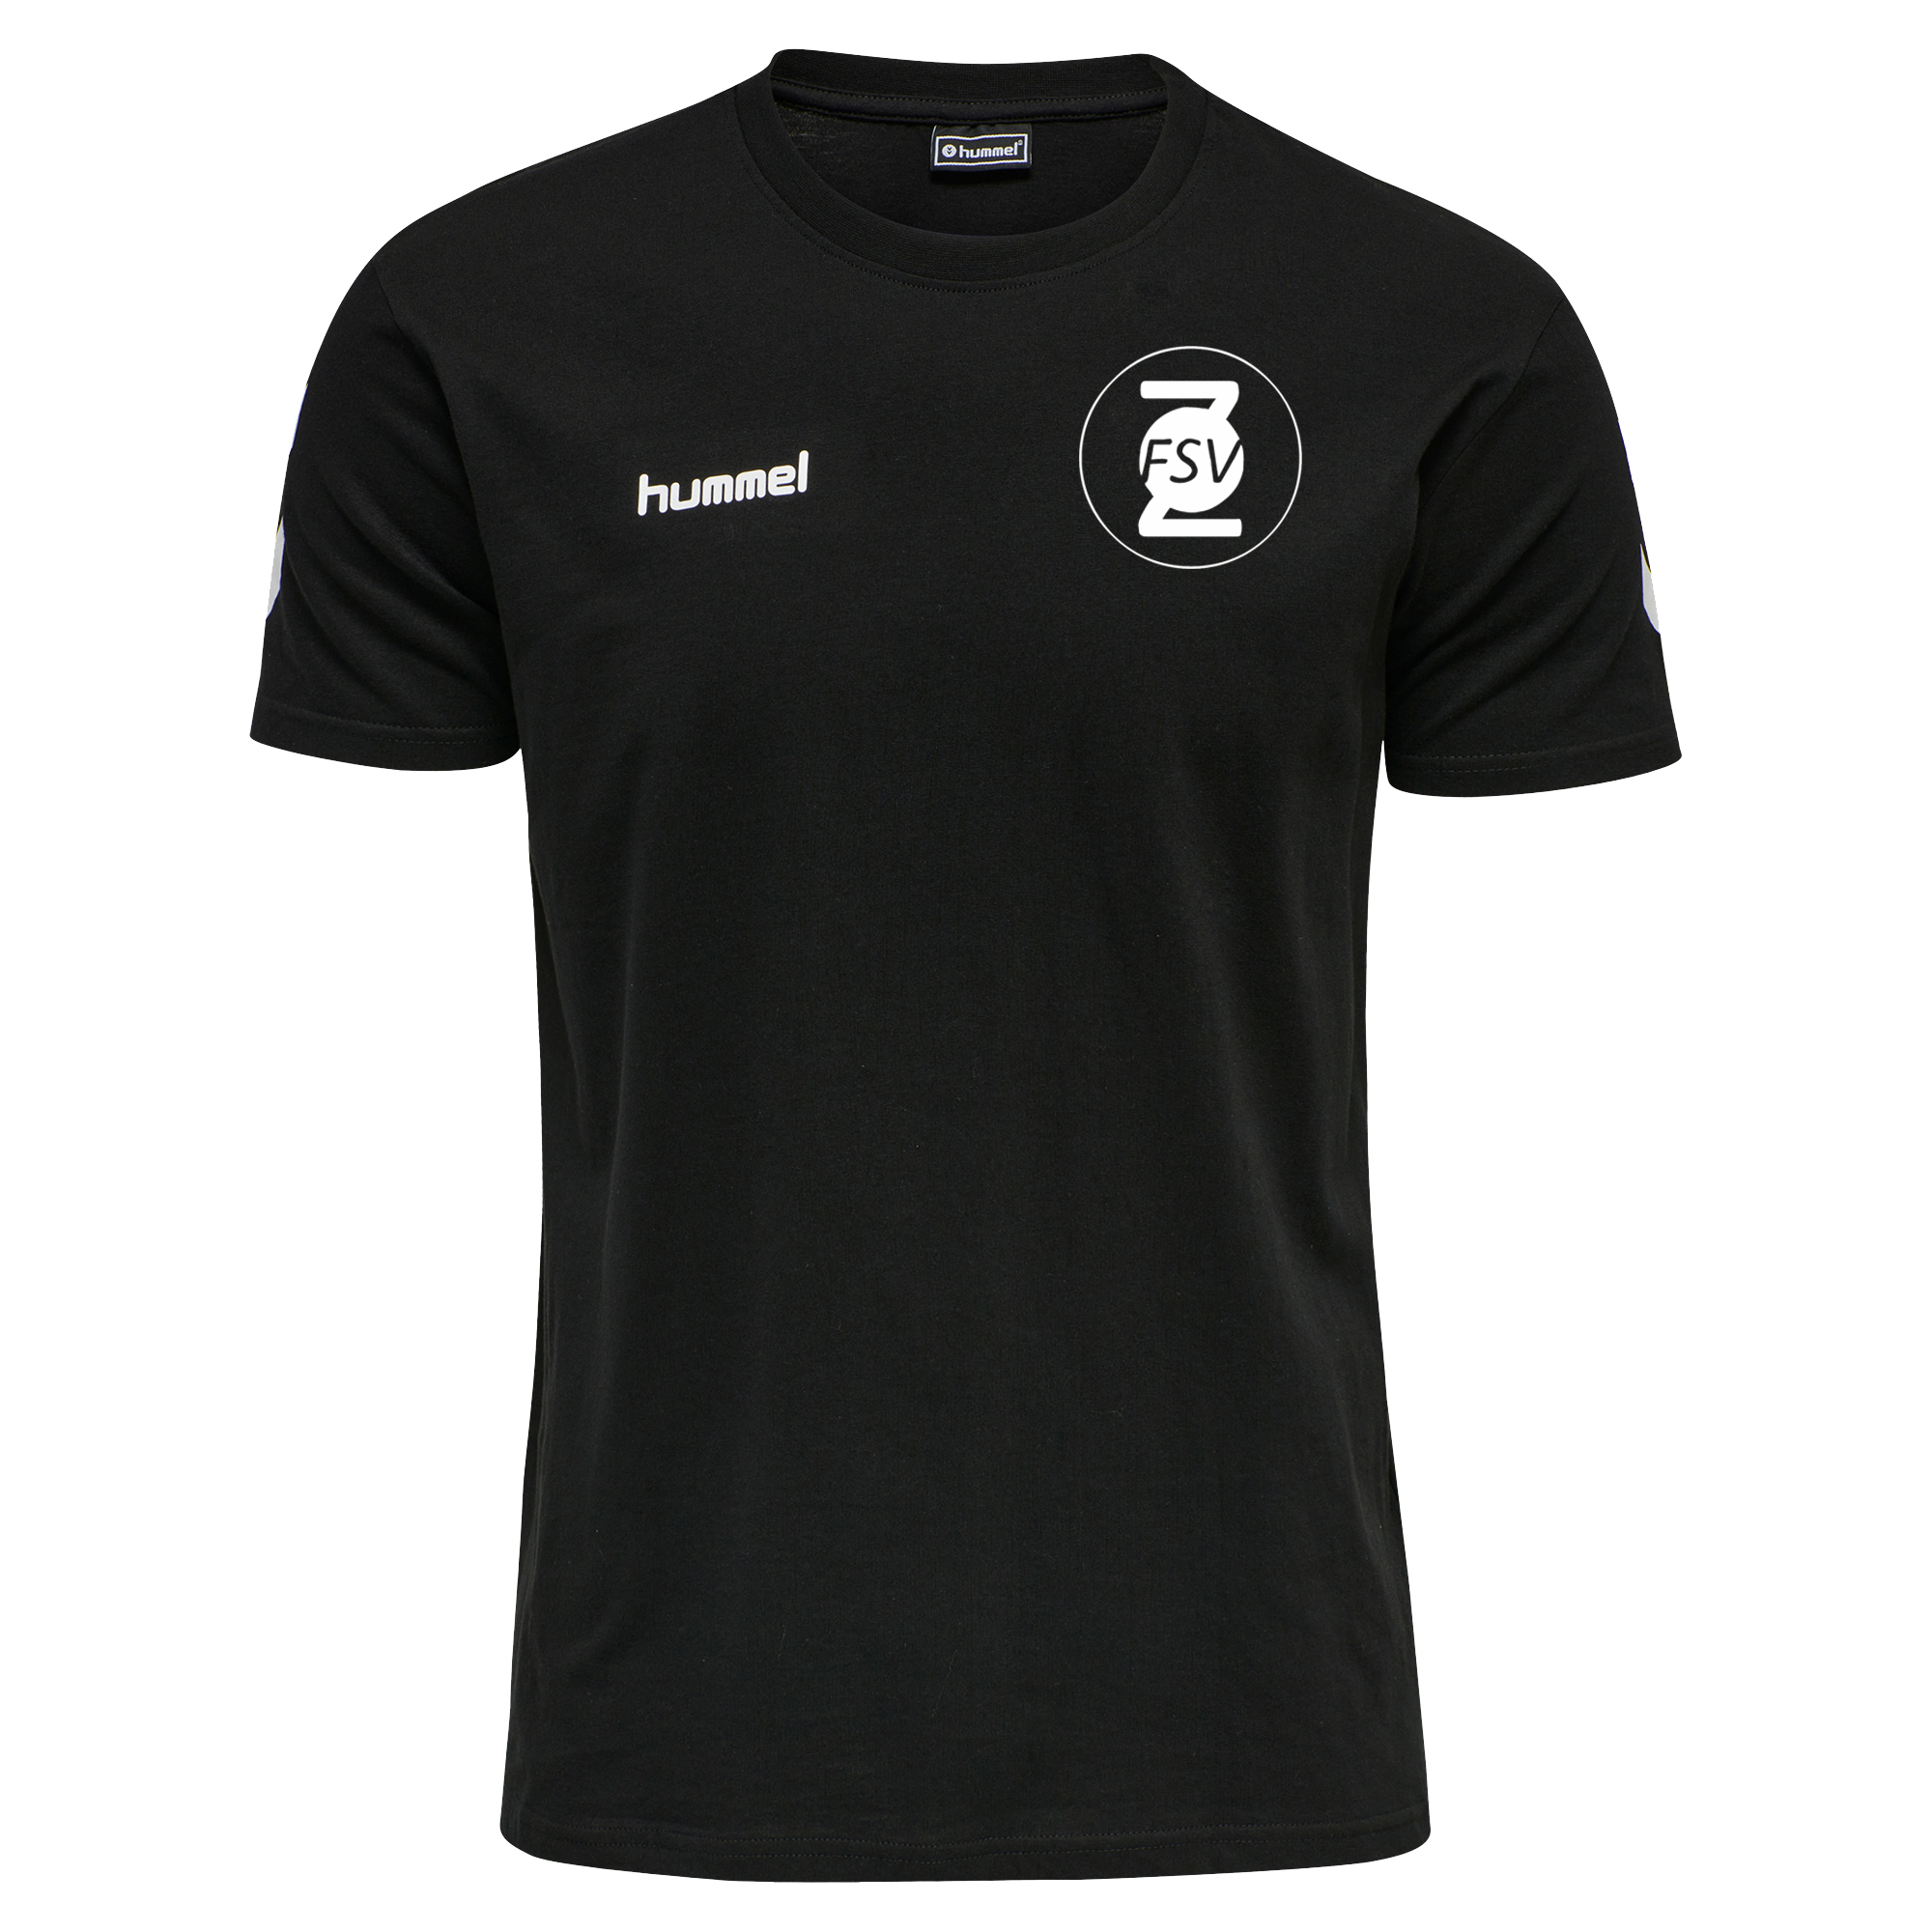 FSV Ziegenrück T-Shirt